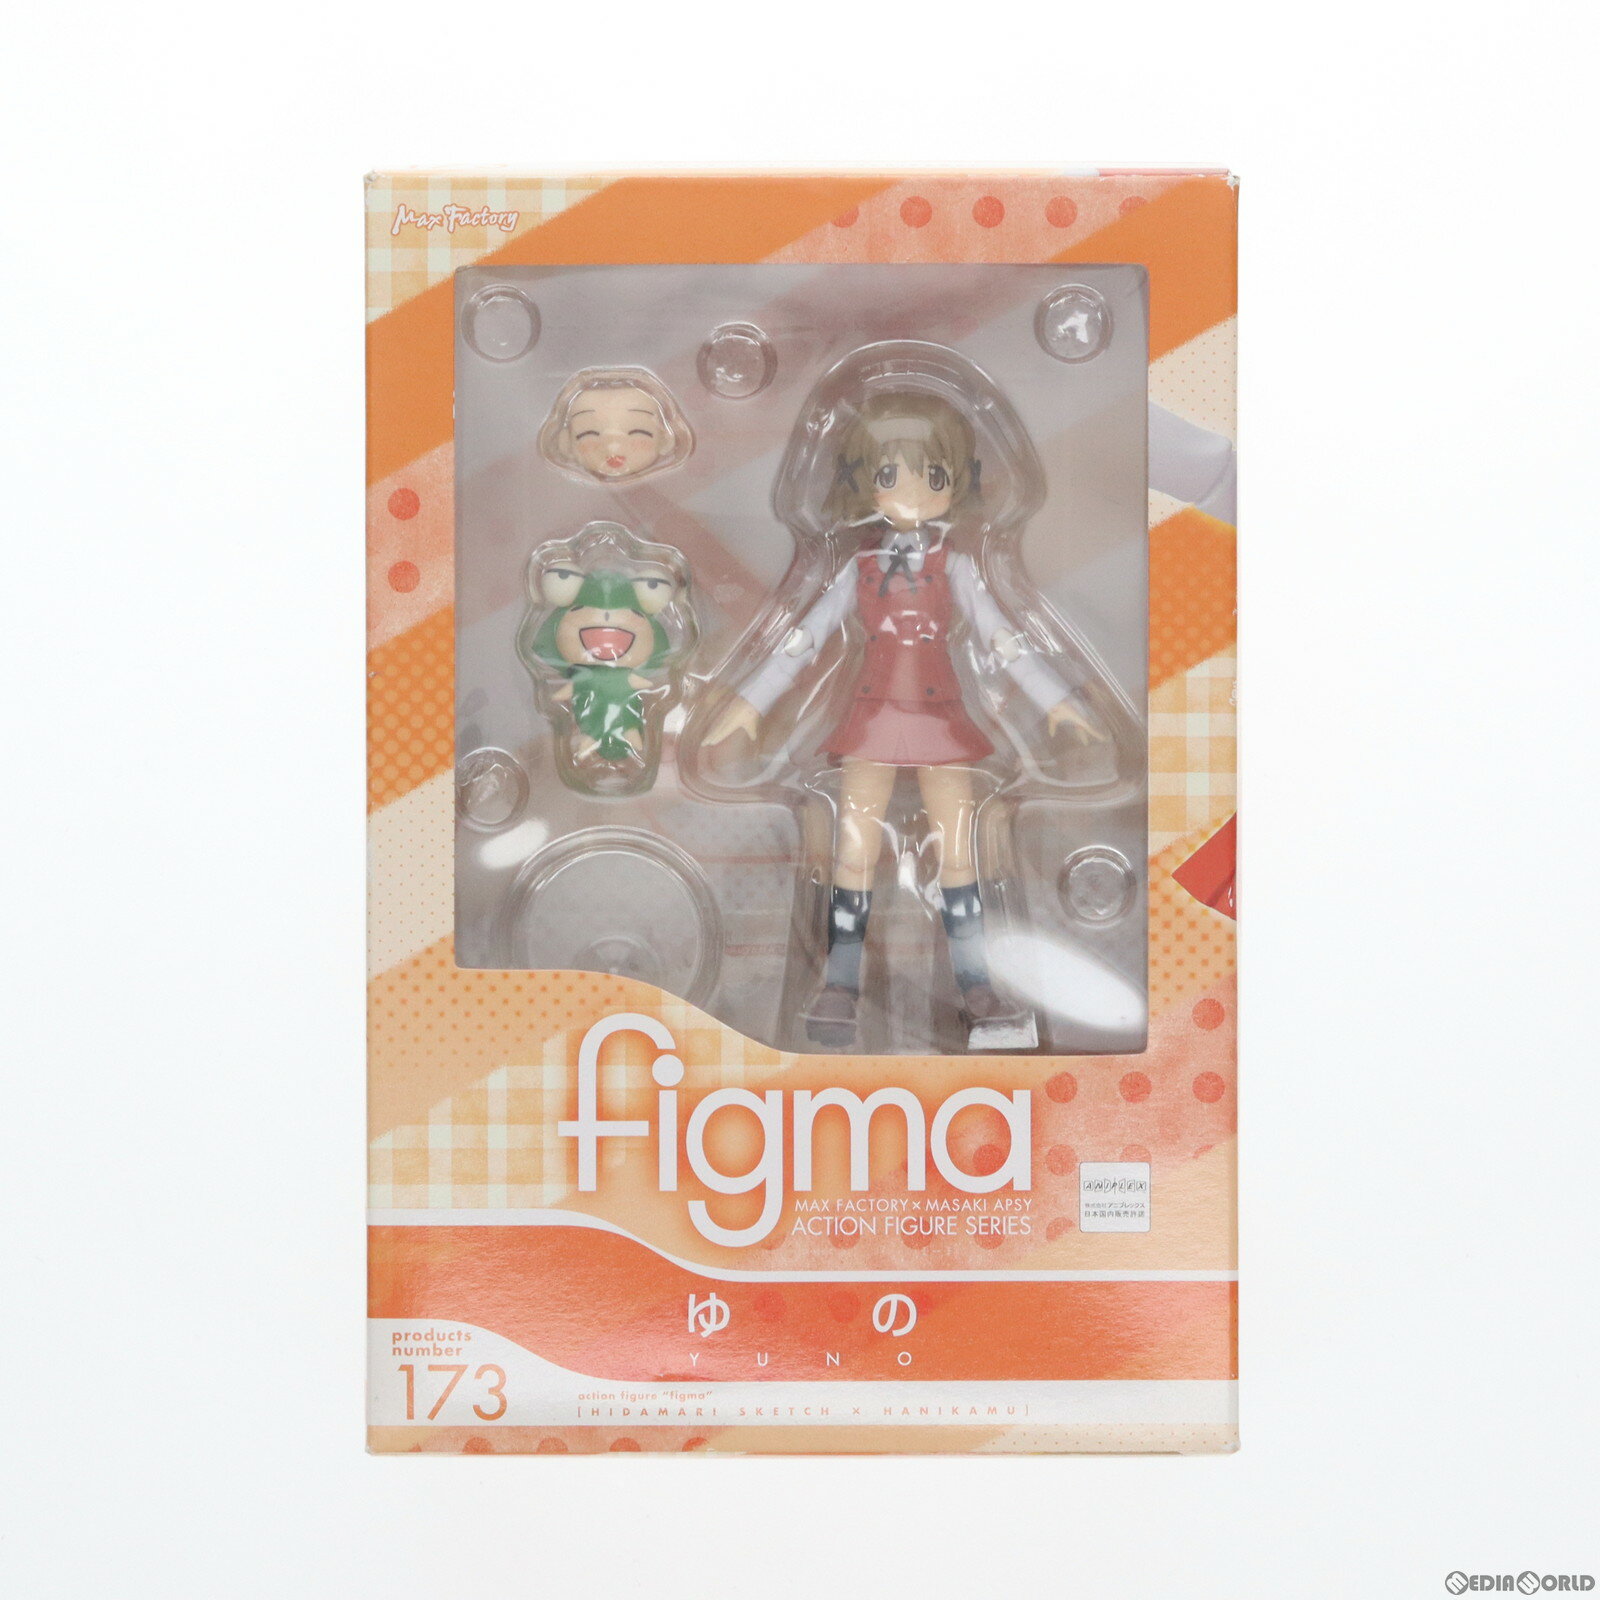 【中古】[FIG]figma(フィグマ) 173 ゆの ひだまりスケッチ×ハニカム 完成品 可動フィギュア マックスファクトリー(20130526)